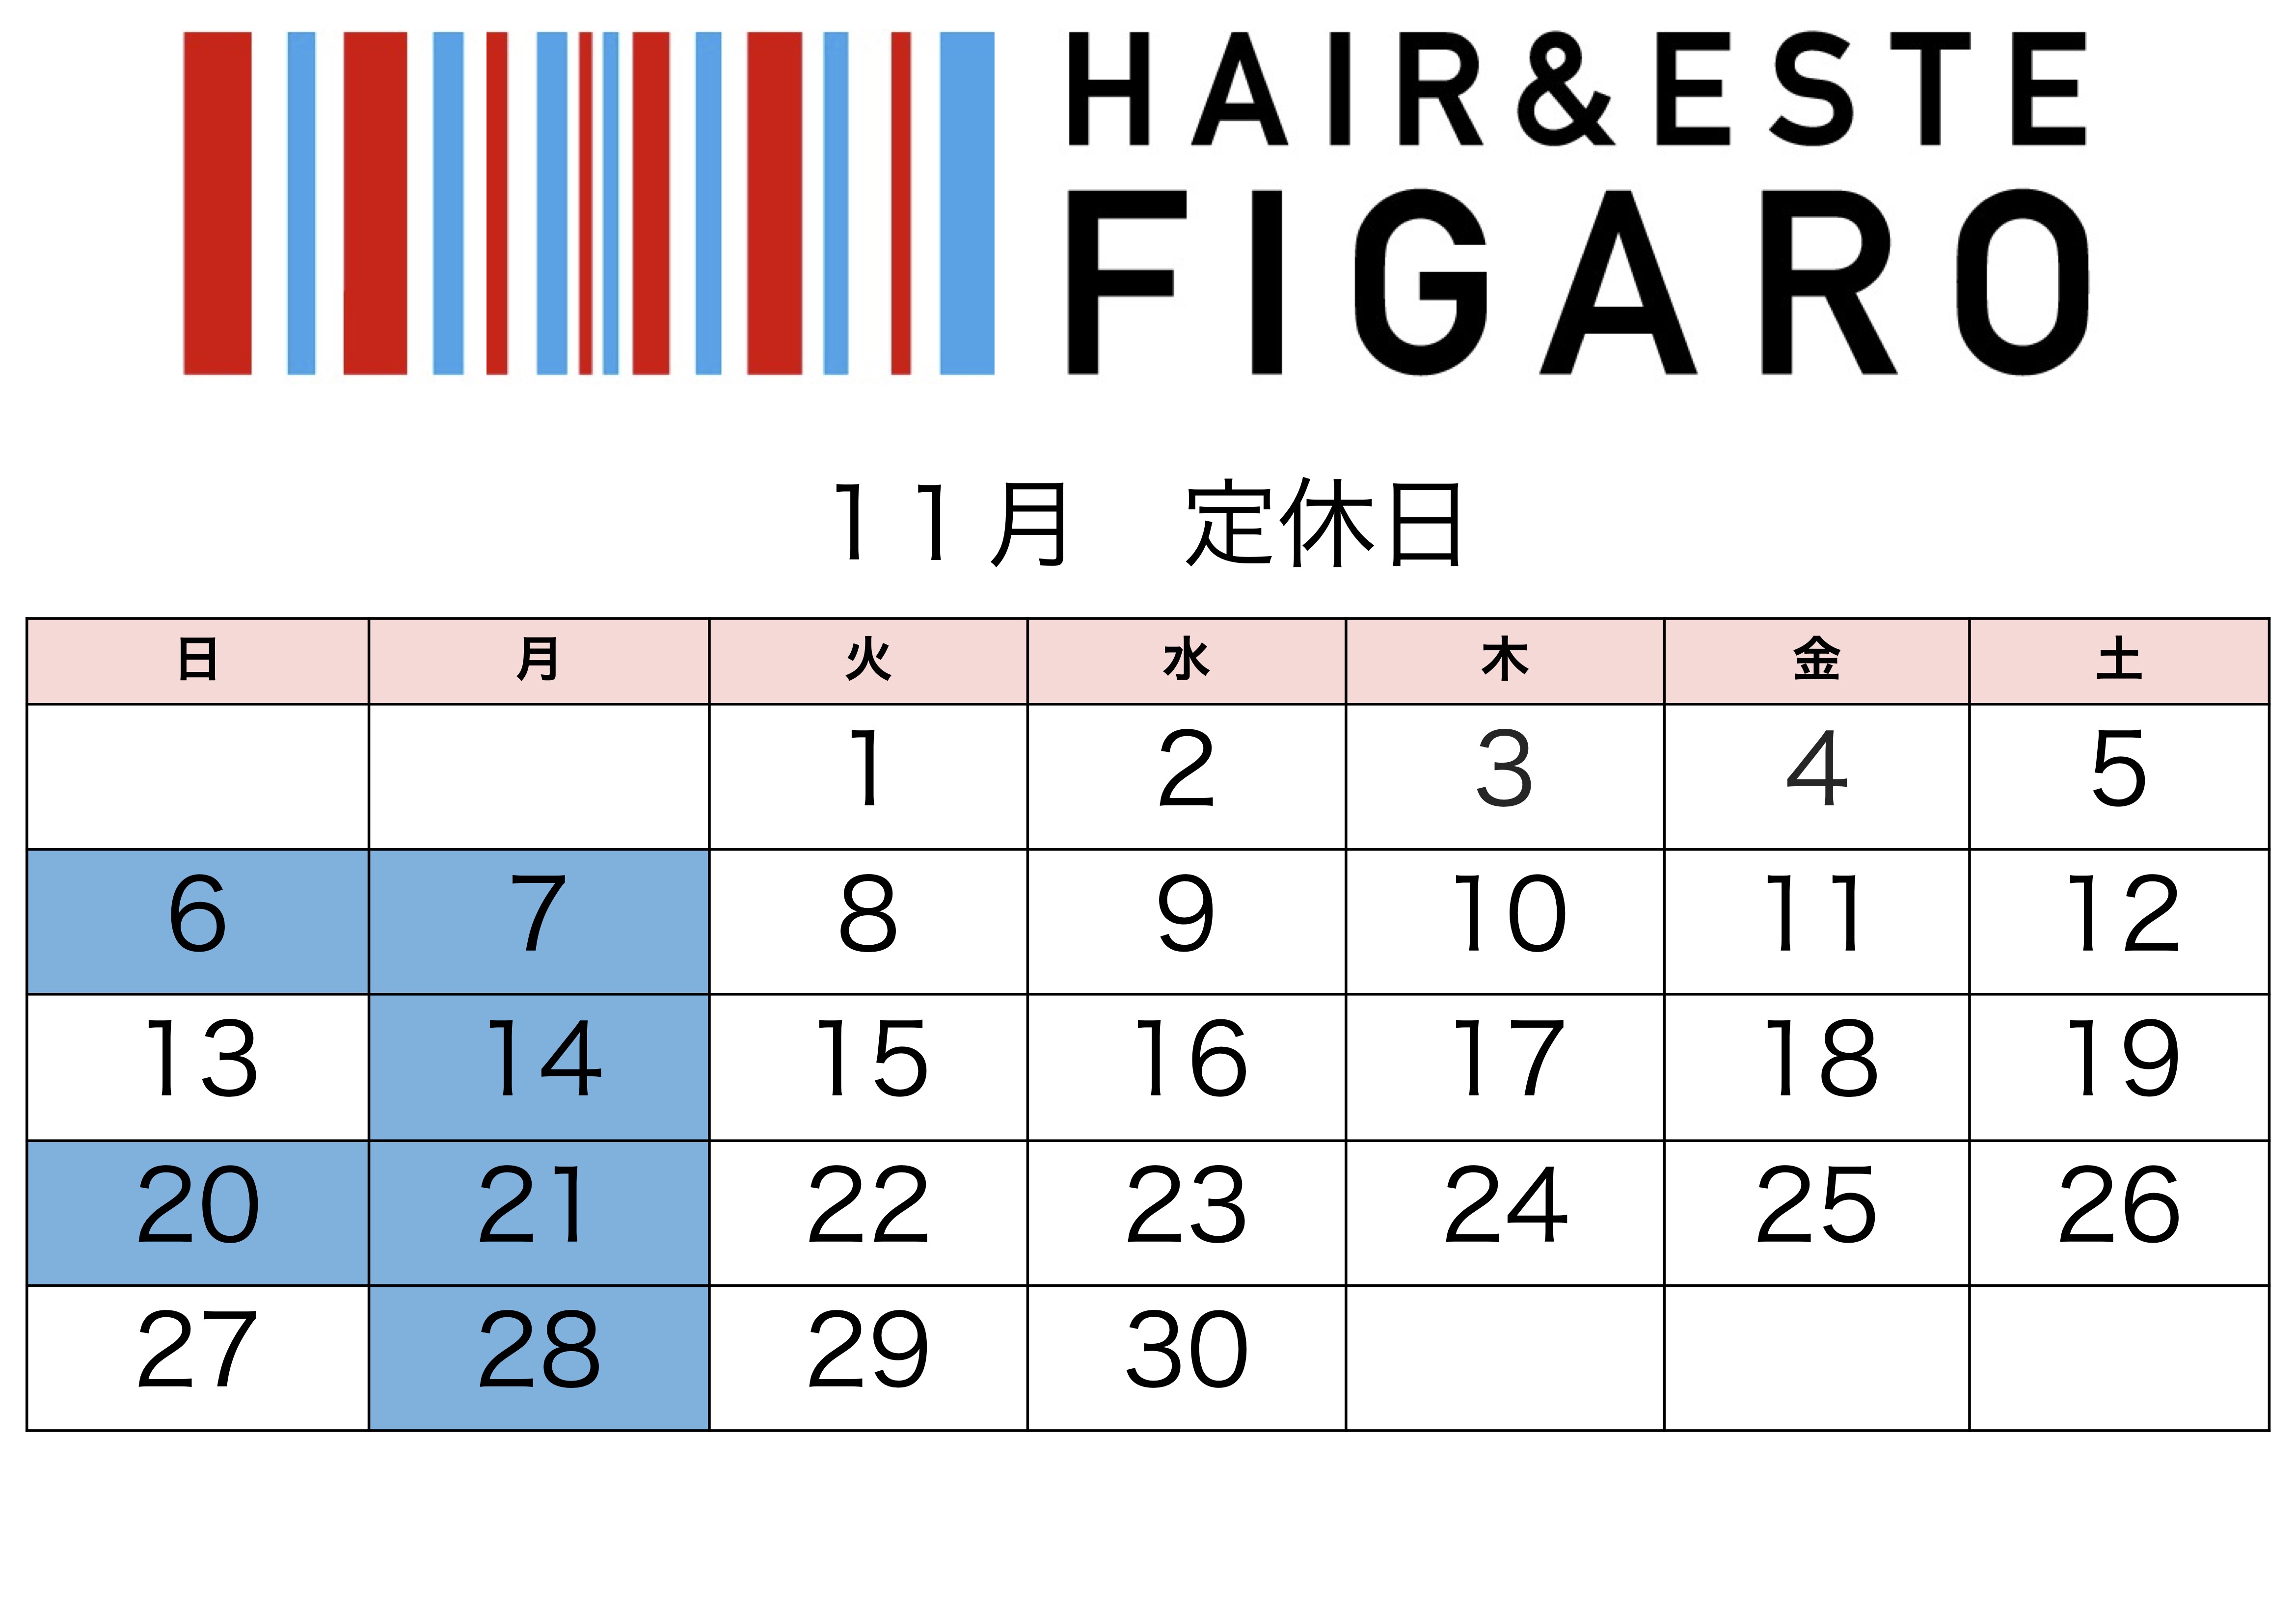 http://figaro-hair.com/blog/%EF%BC%92%EF%BC%90%EF%BC%92%EF%BC%92%EF%BC%91%EF%BC%91.jpg